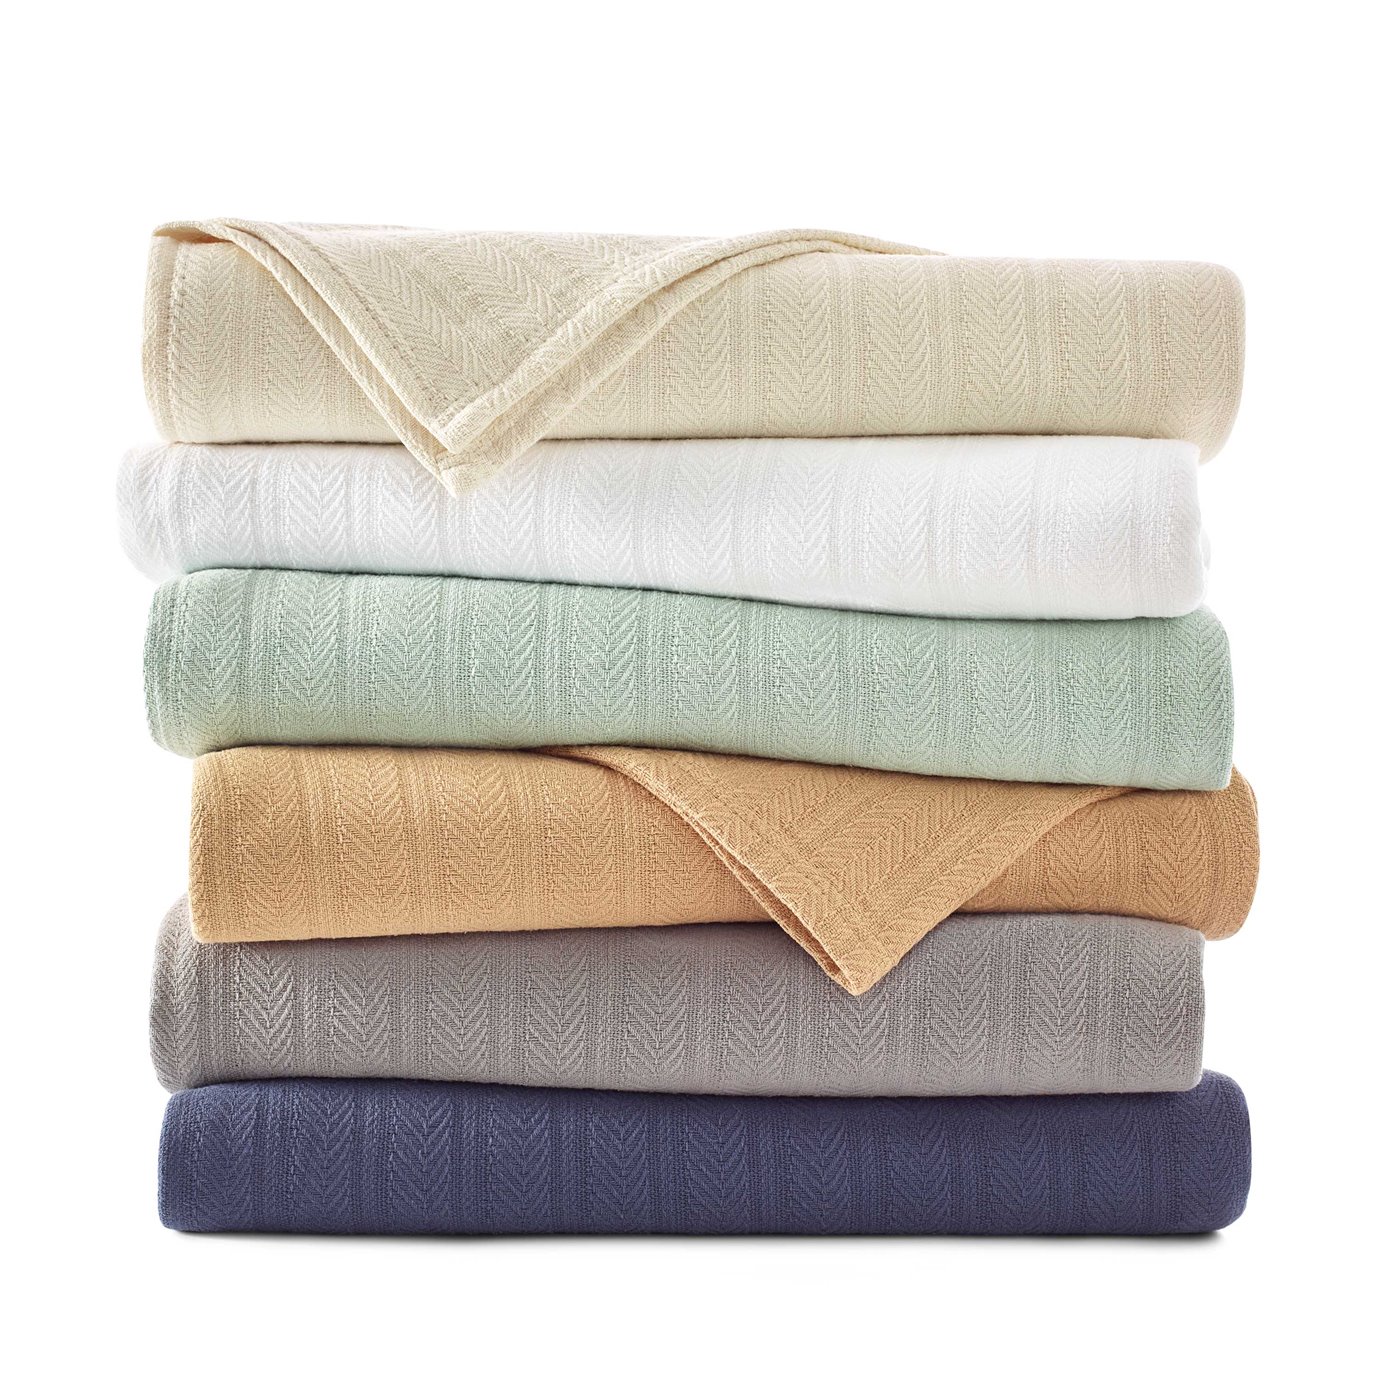 Vellux Cotton Blankets